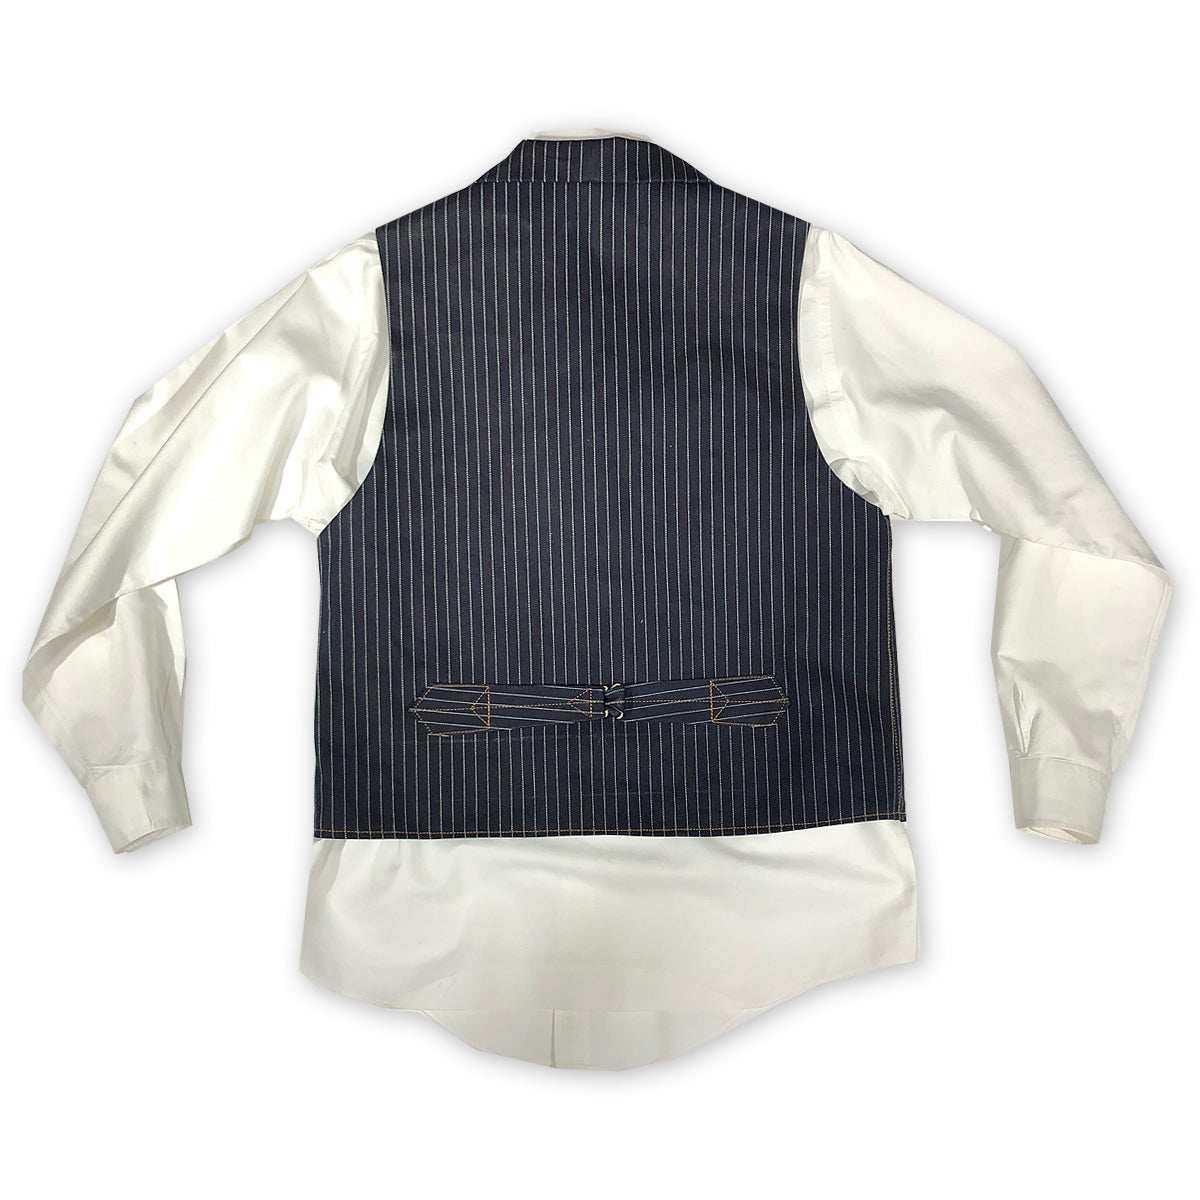 #3192 13.5oz Japanese Indigo/Indigo WABASH White Selvage Type D Waistcoat